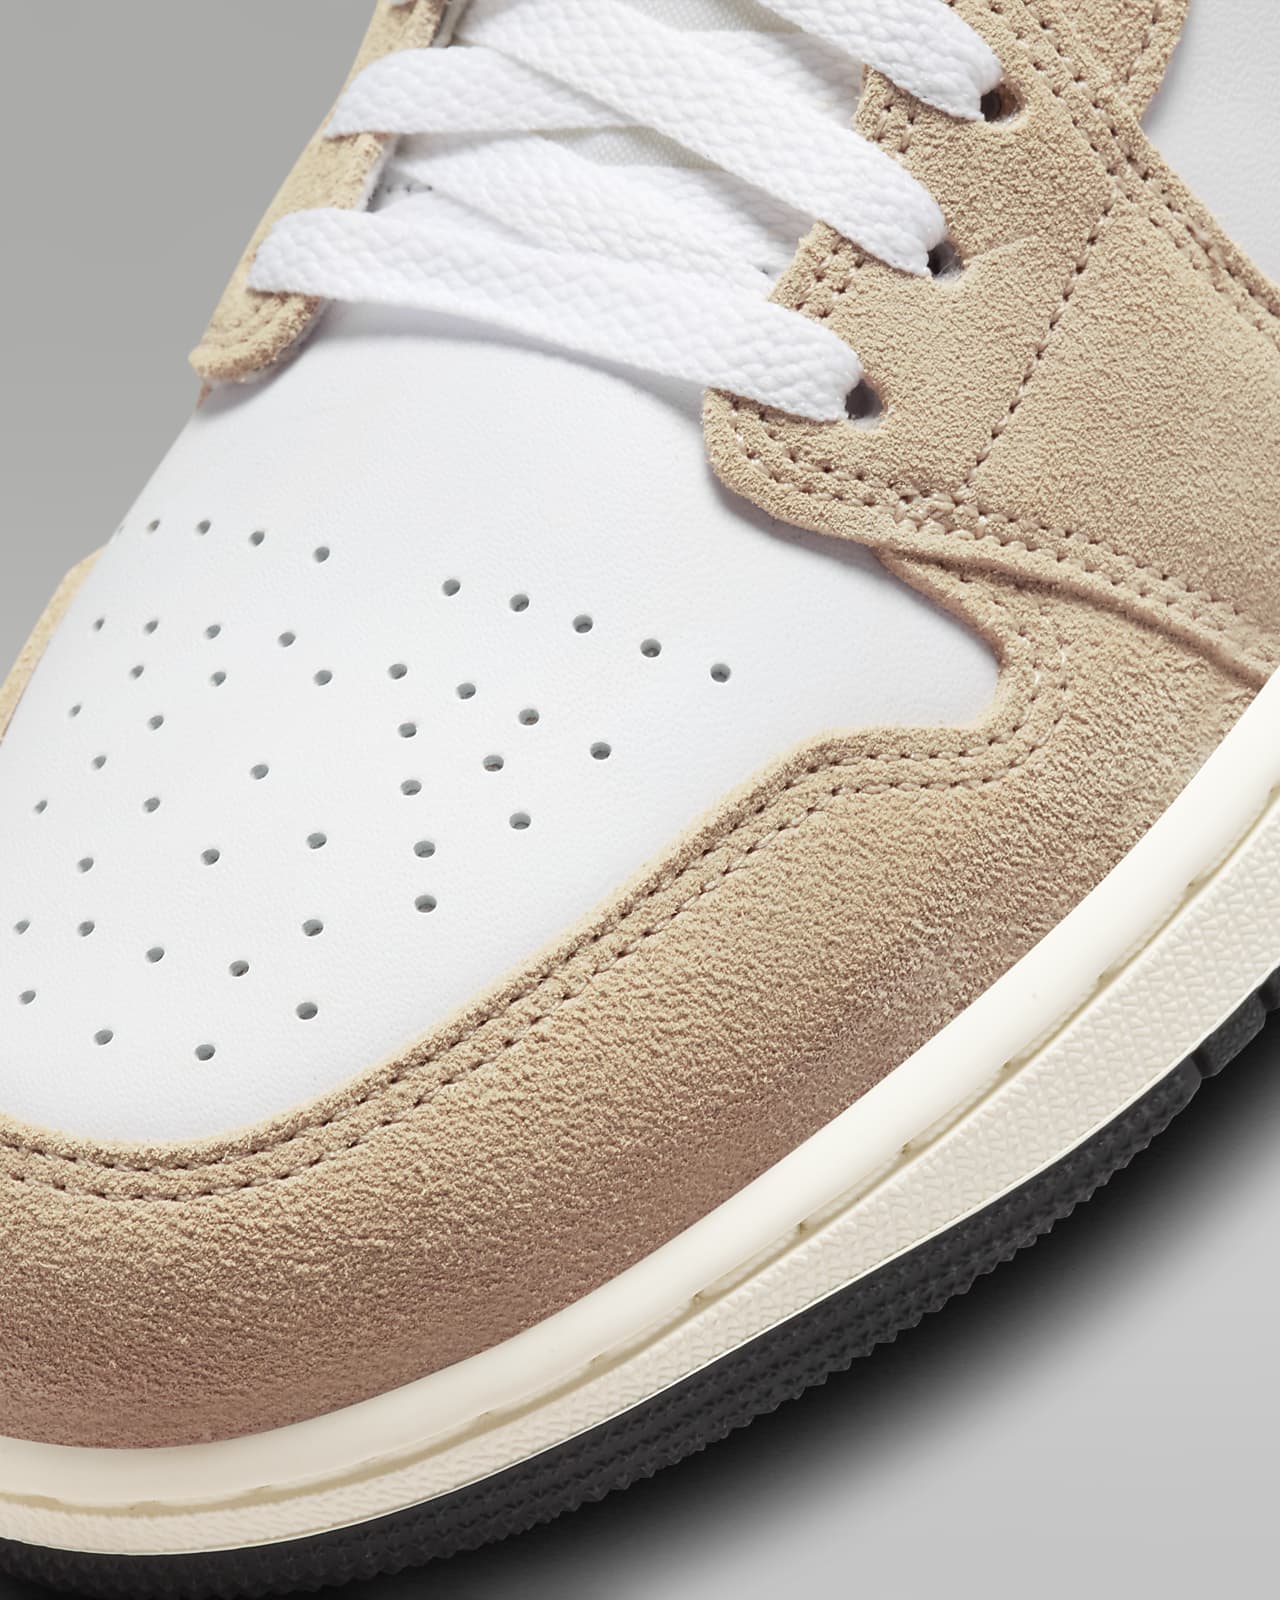 Air Jordan Retro 1 Low Casual Shoes